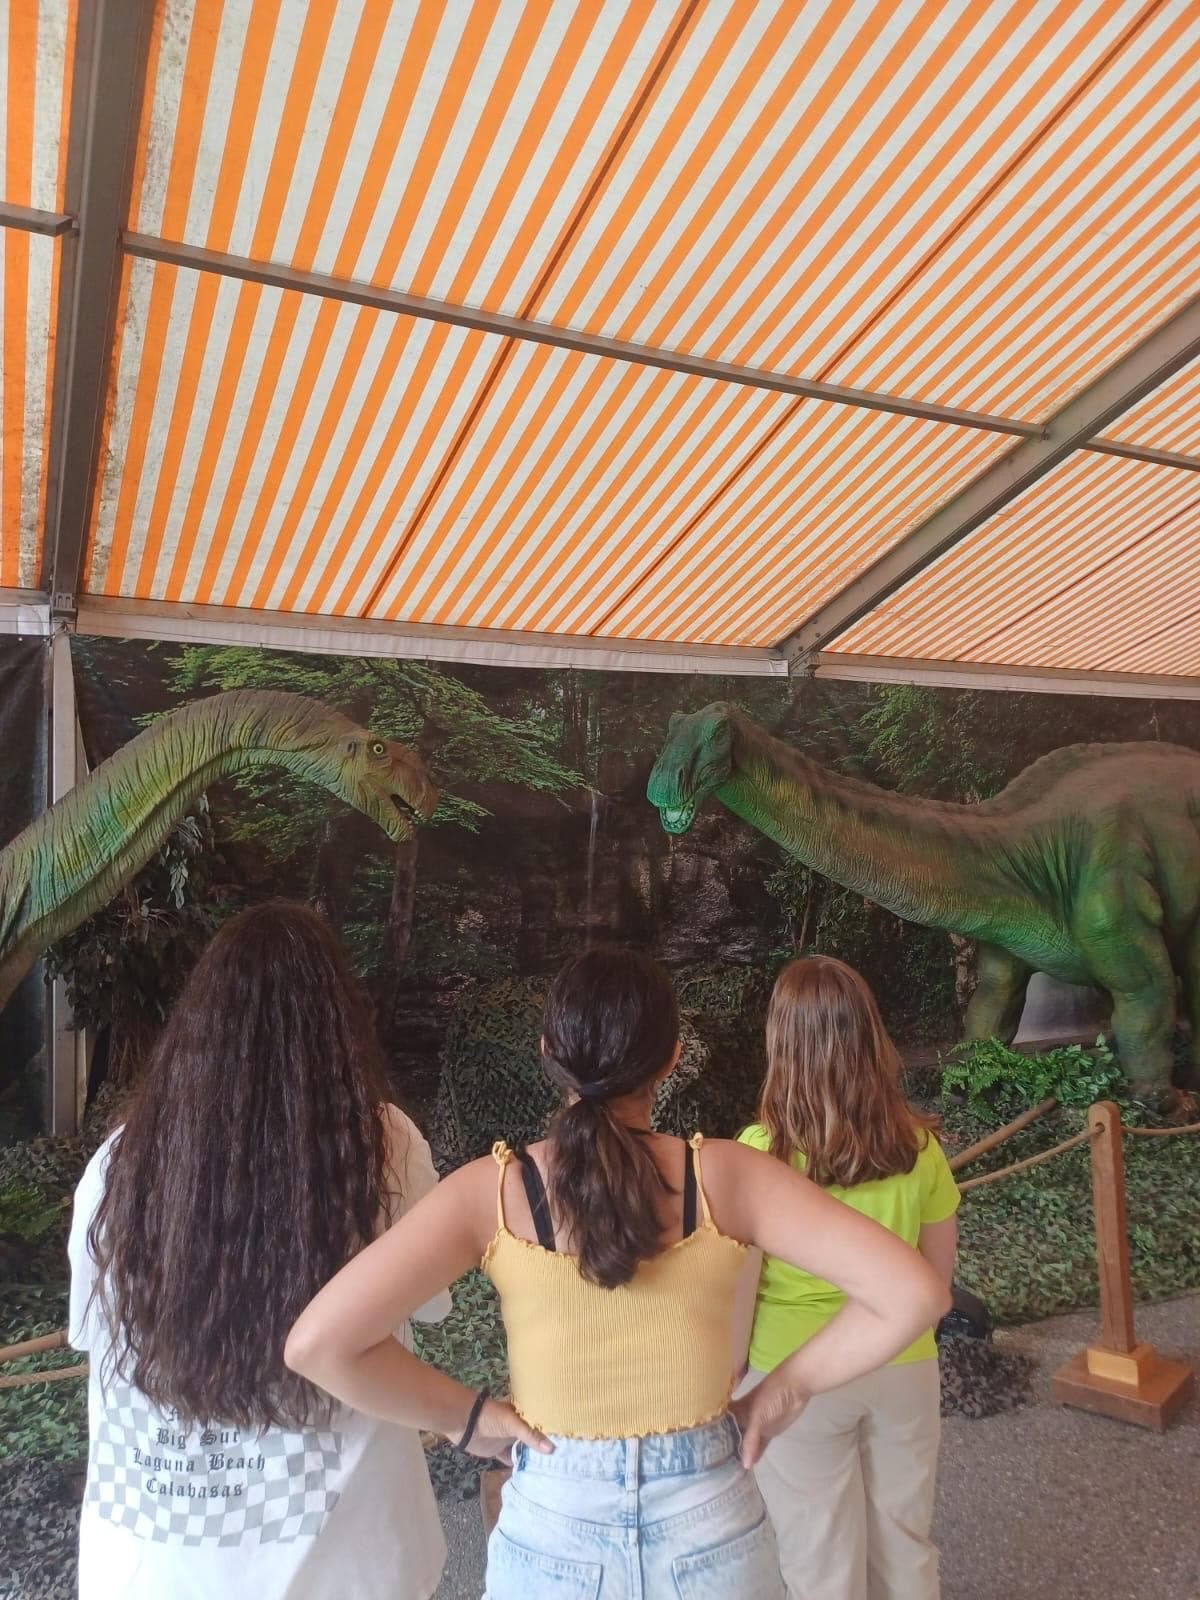 Visita a la "Exposición Dinosauria Experience" - Imagen 1